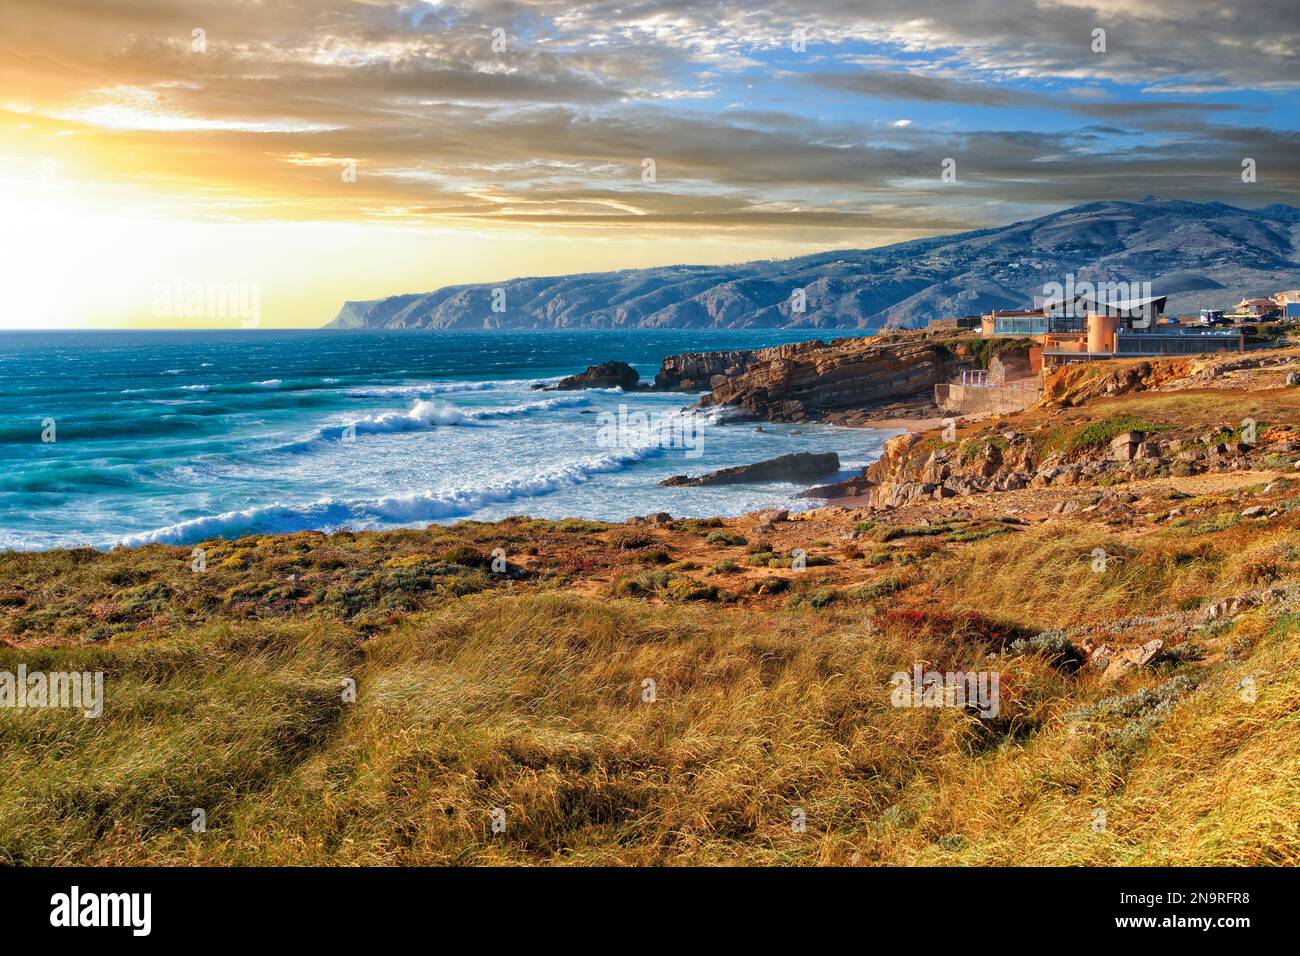 Pittoresco paesaggio del tramonto sulla costa rocciosa dell'infuocato Oceano Atlantico vicino a Capo Roca alla luce del sole che tramonta in Portogallo. Comune Foto Stock